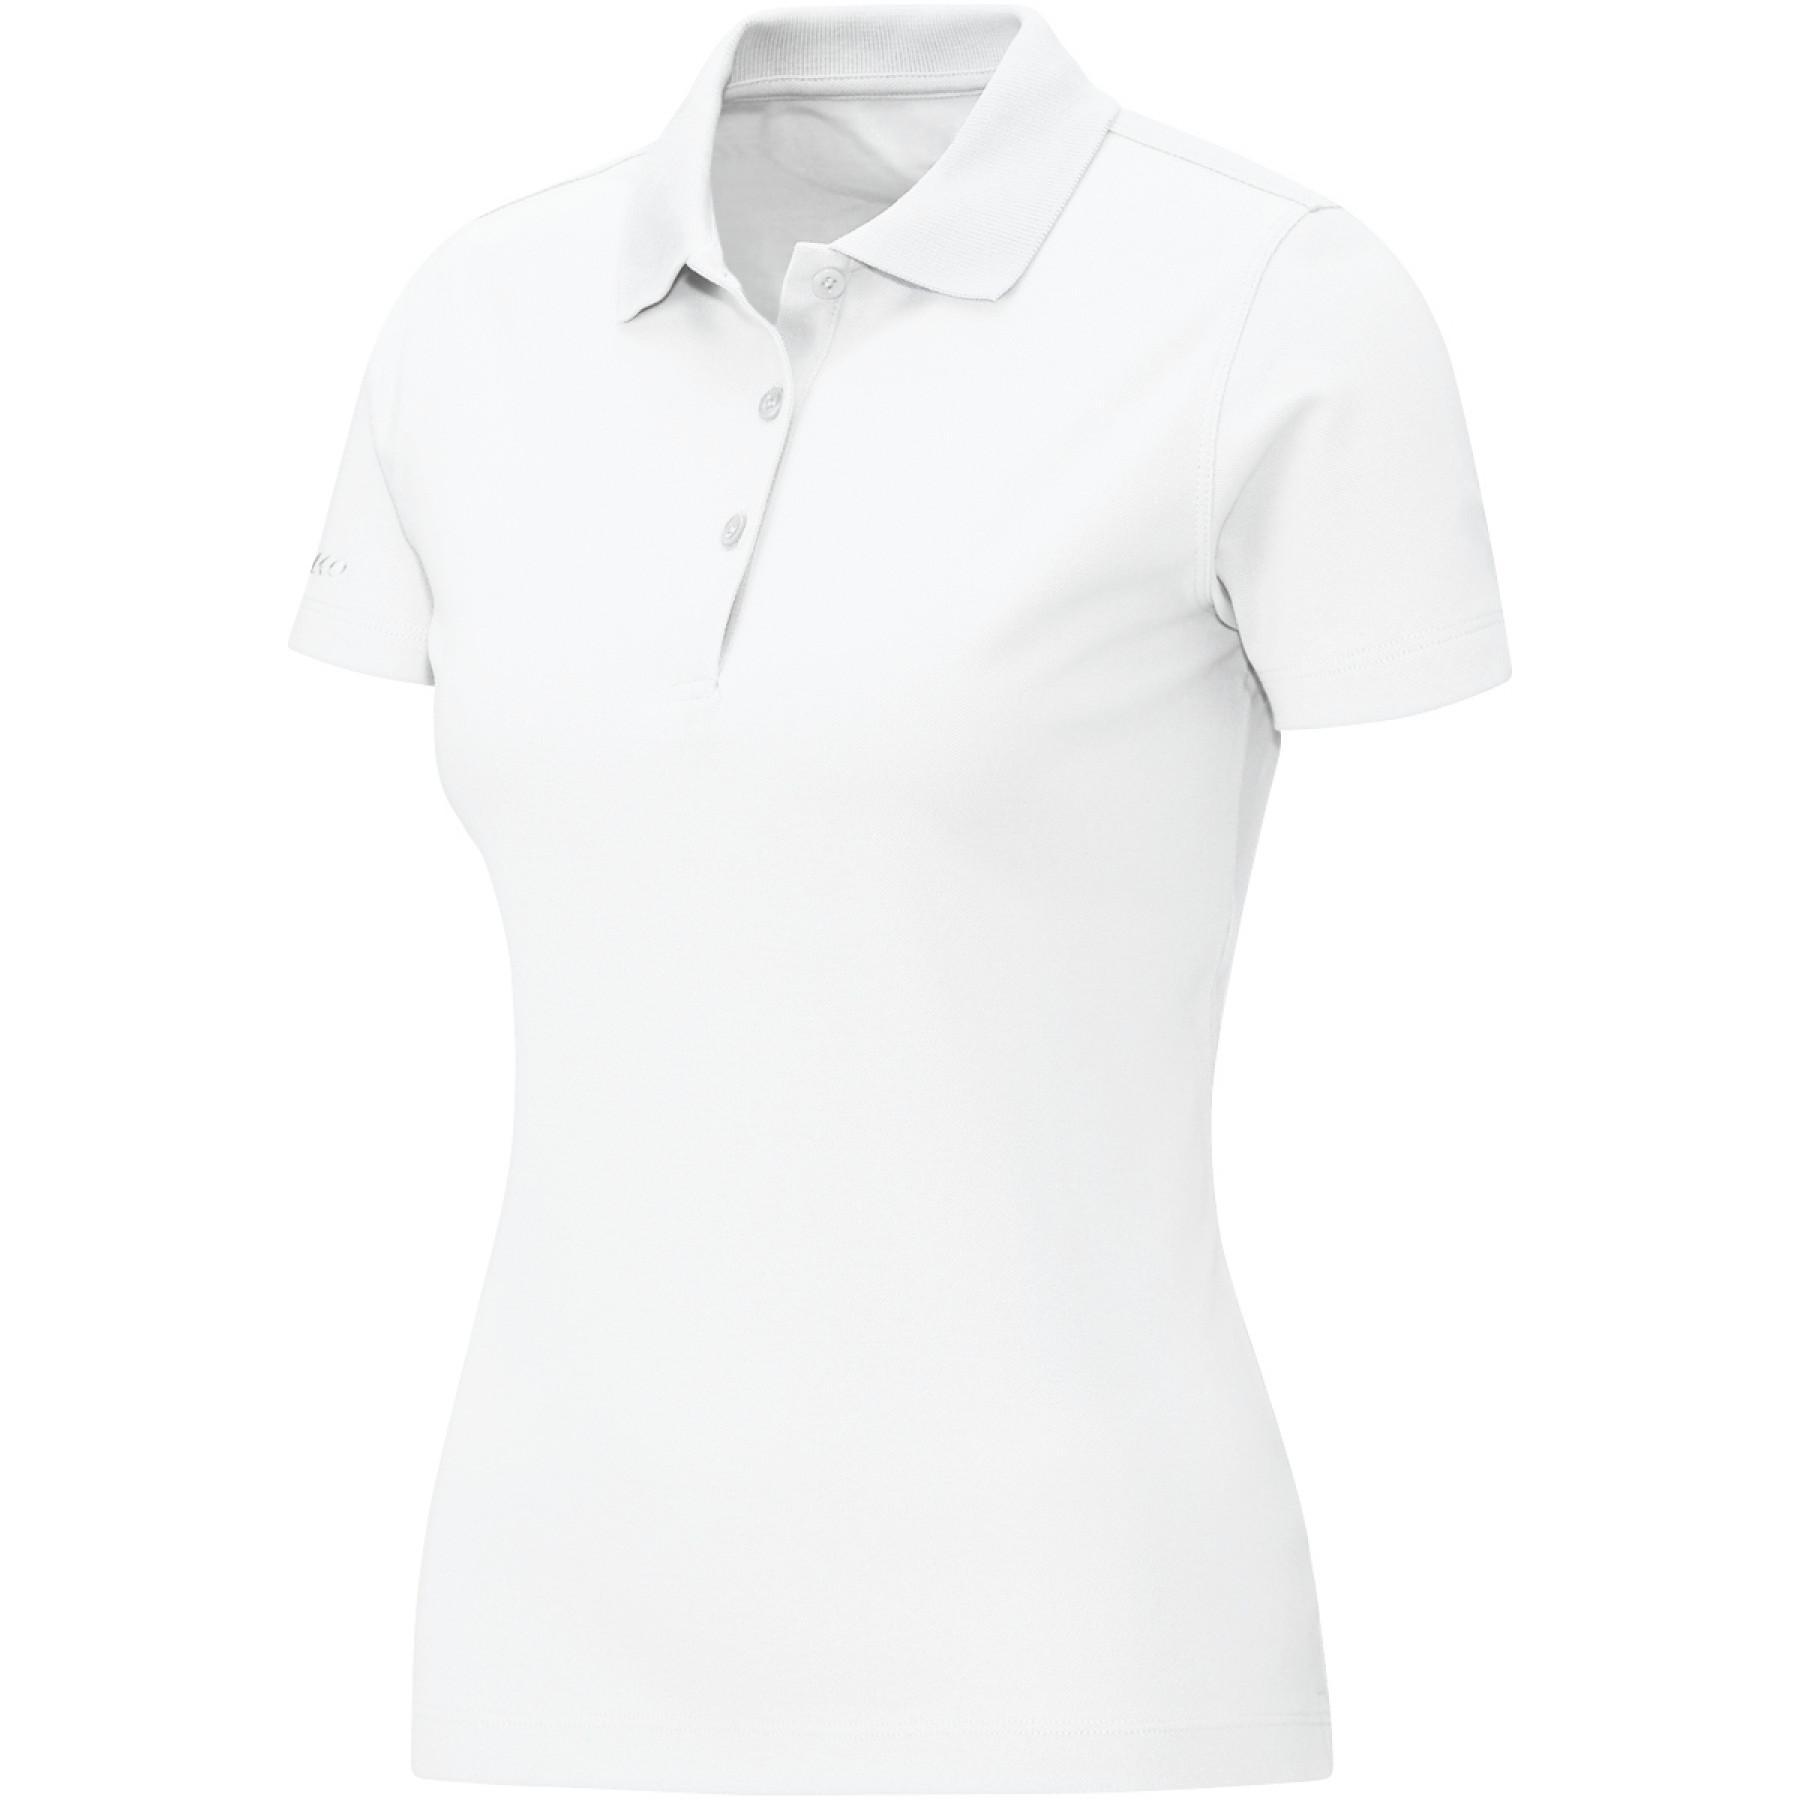 Women's polo shirt Jako Classic coton